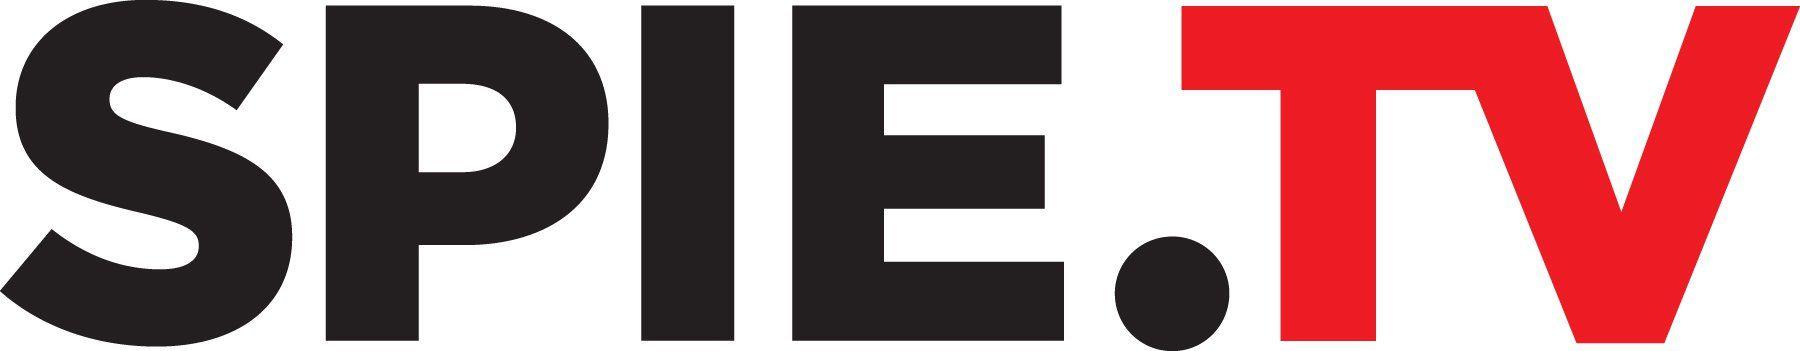 SPIE Logo - SPIE logos, branch logos, SPIE images: SPIE